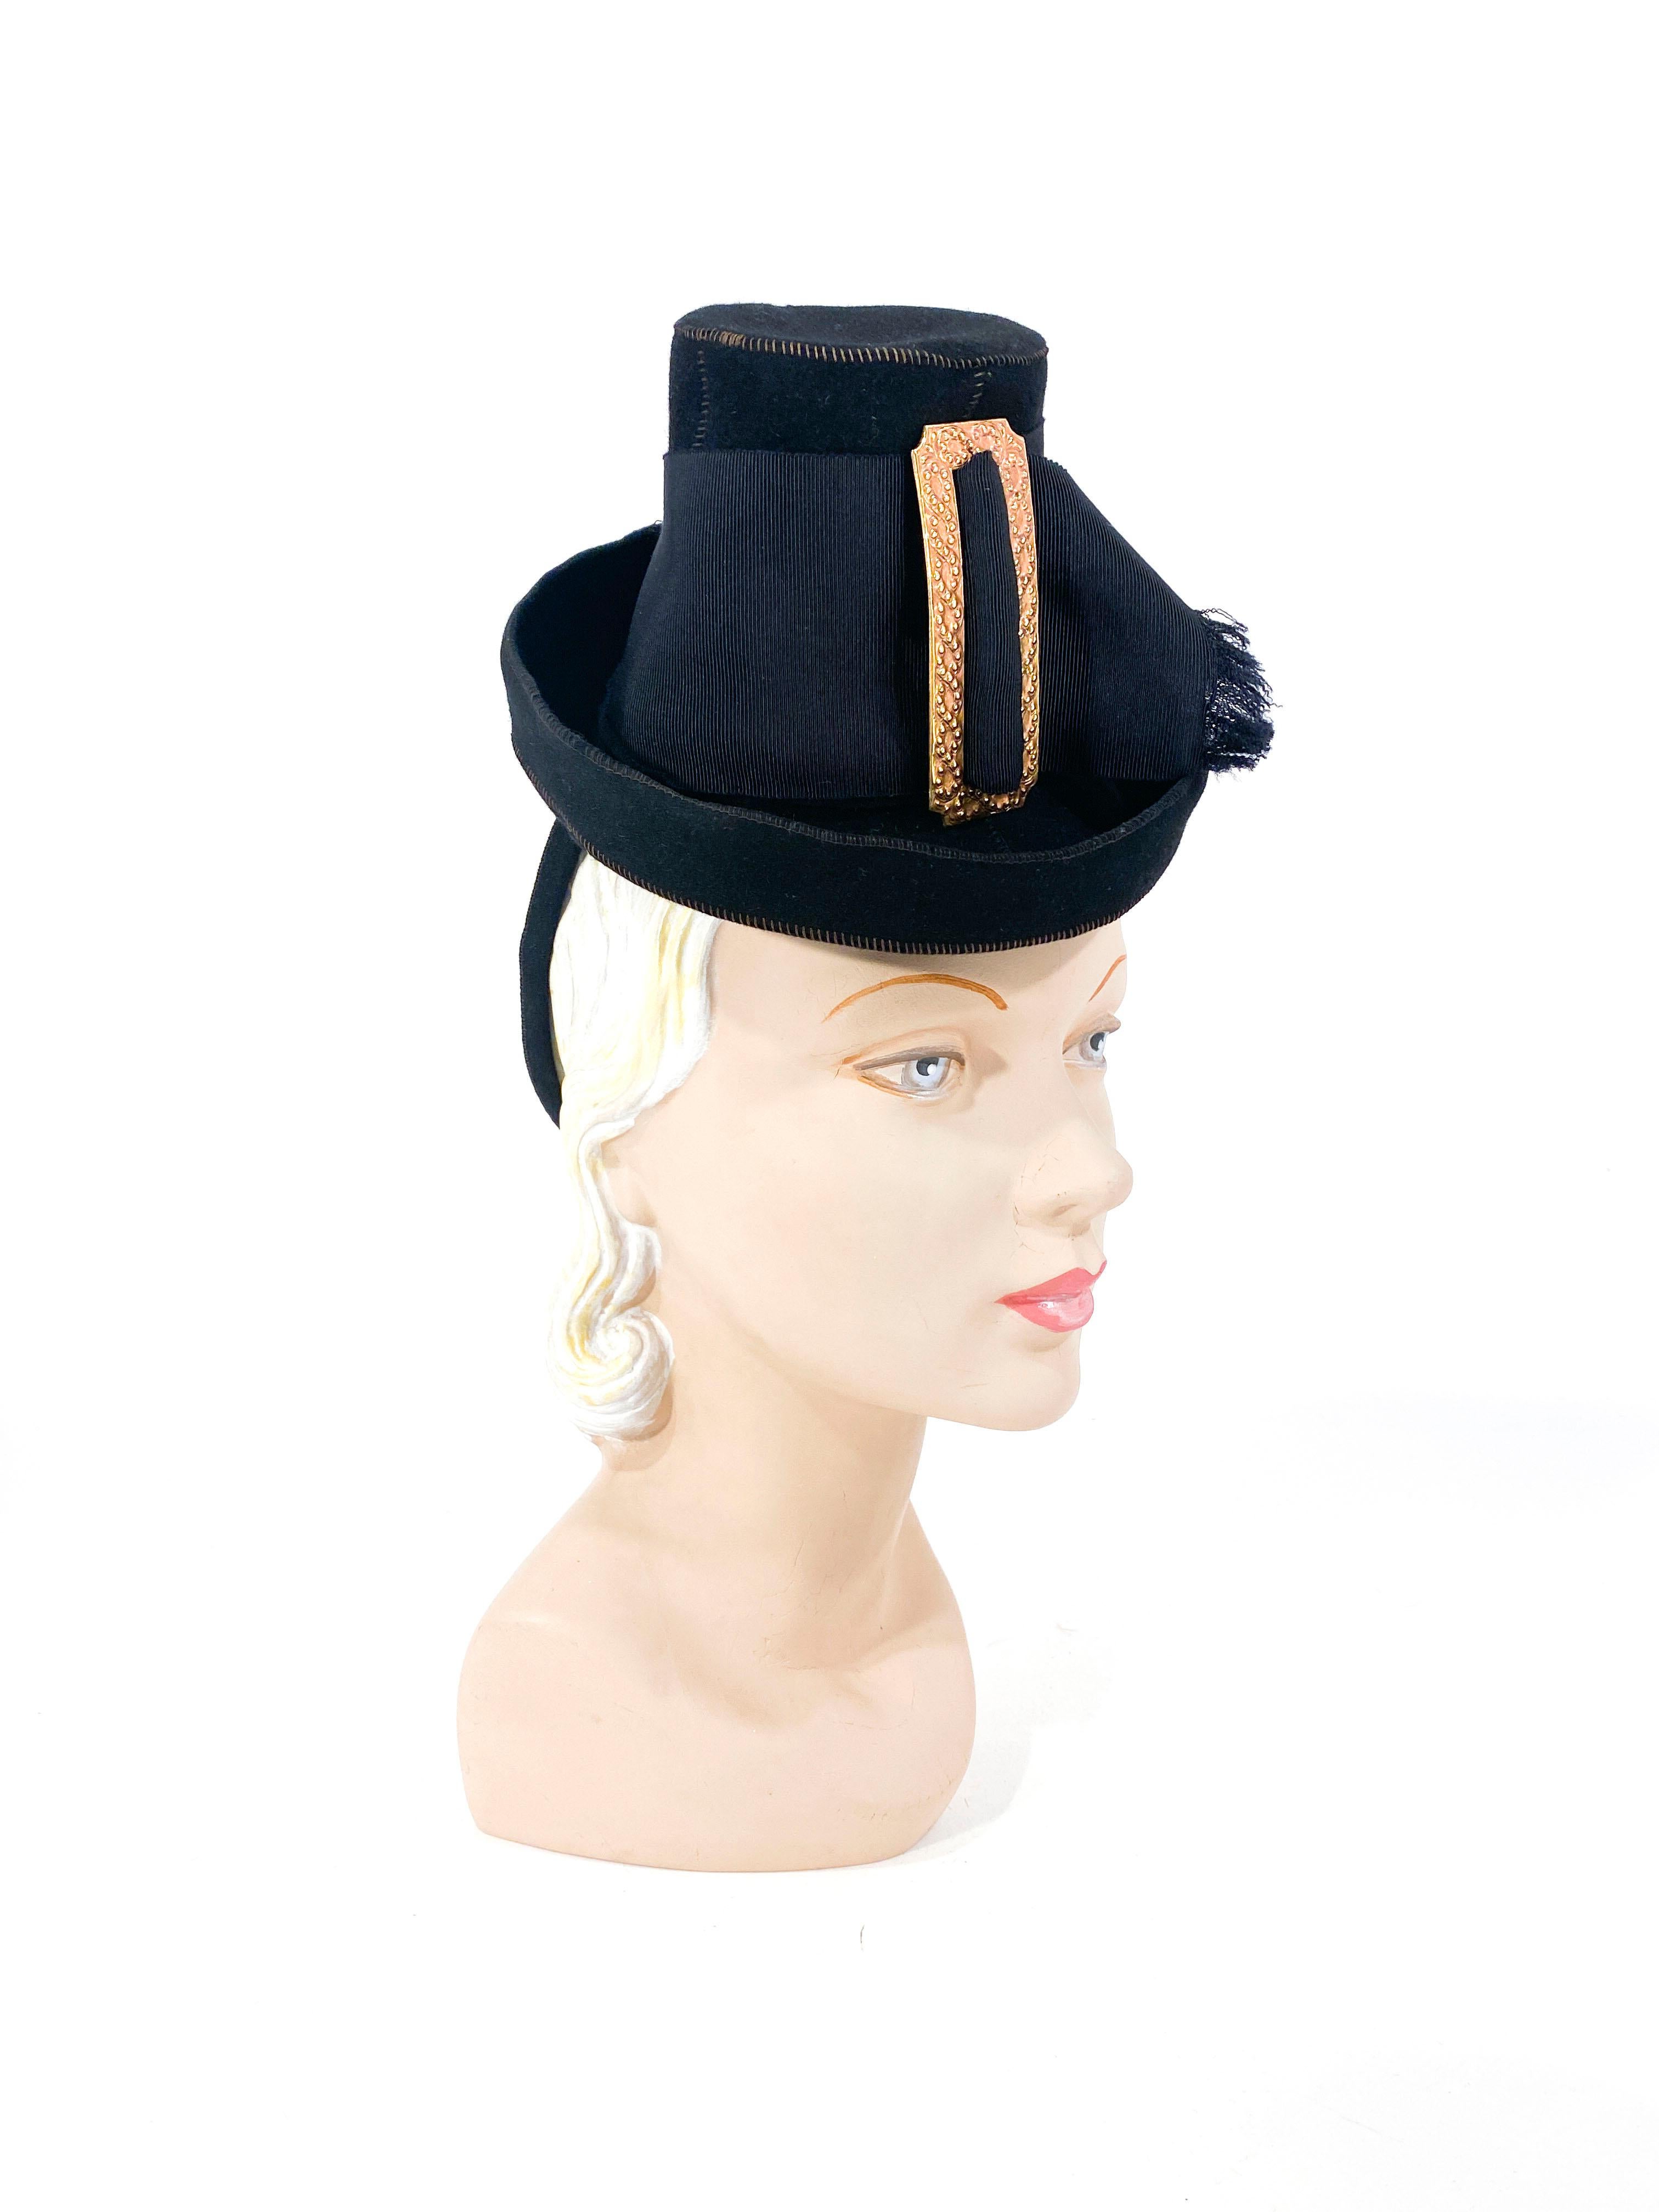 Sombrero de peregrino de juguete de fieltro de piel negro de finales de los años 30, con una ancha banda de cinta de grosgrain y una gran hebilla decorativa de latón. La anilla de seguridad estructurada está recubierta de fieltro de pelo negro a